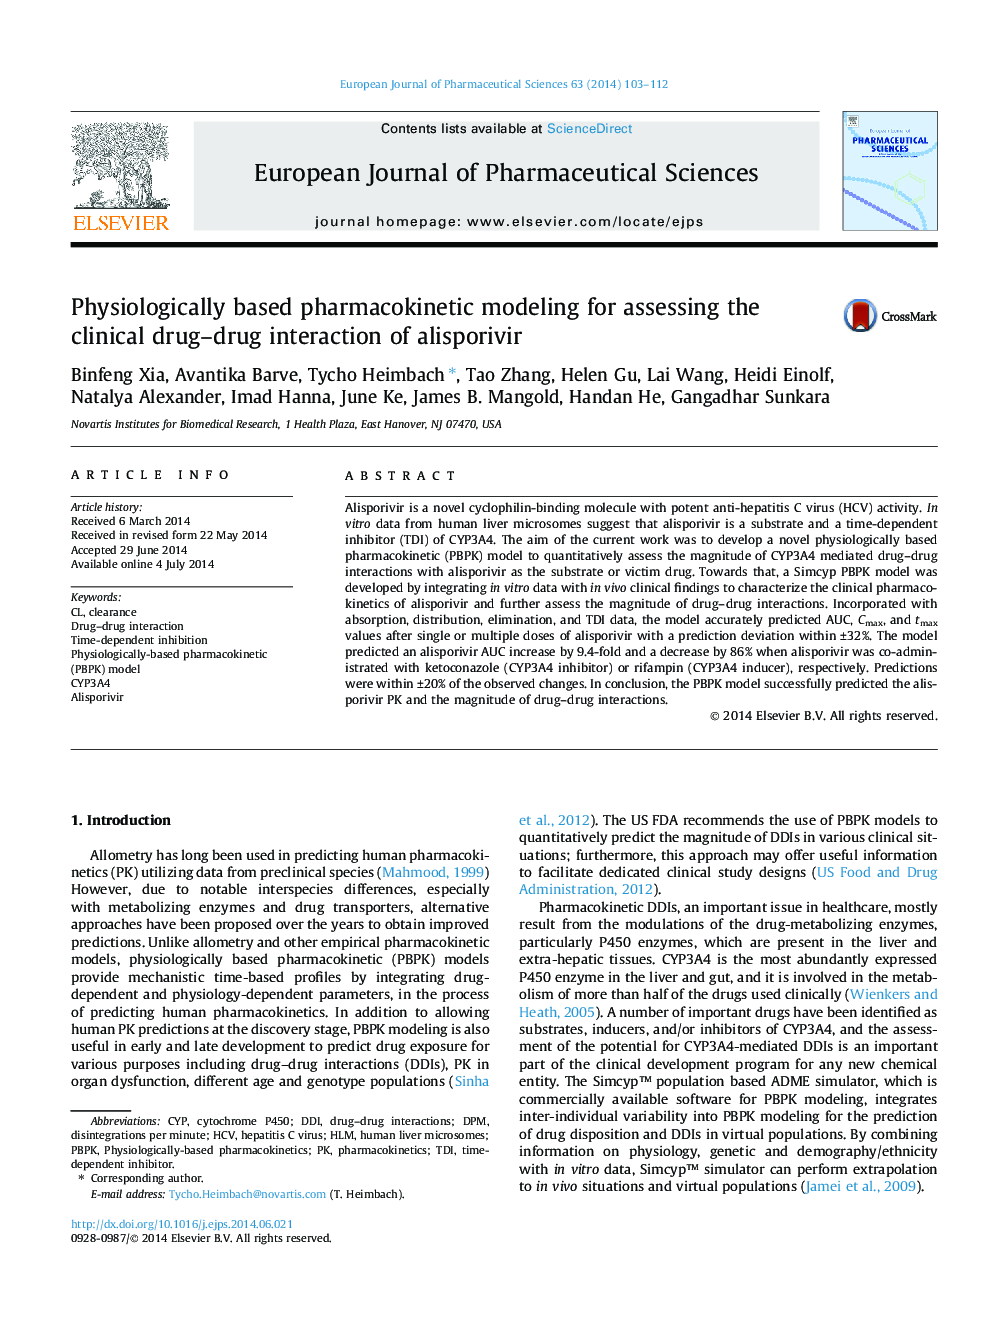 مدلسازی فارماکوکینتیک مبتنی بر فیزیولوژی برای ارزیابی اثرات متقابل داروهای بالینی با الیزوپروویر 